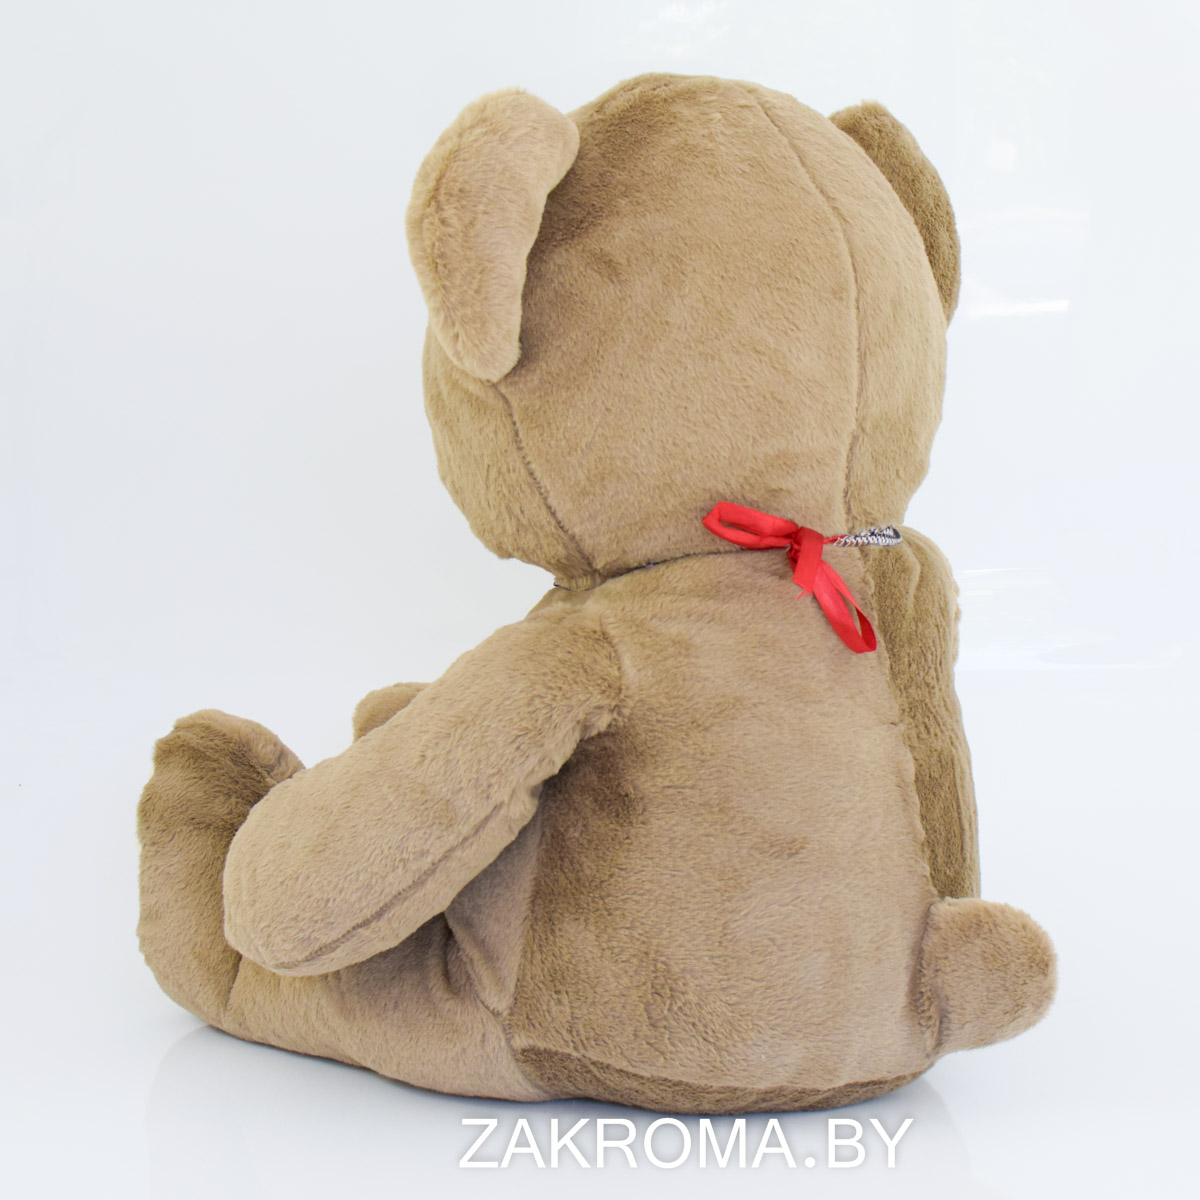 Плюшевый мишка, мягкая игрушка Медведь "Flower Talk" рост 120 см. Цвет коричневый.